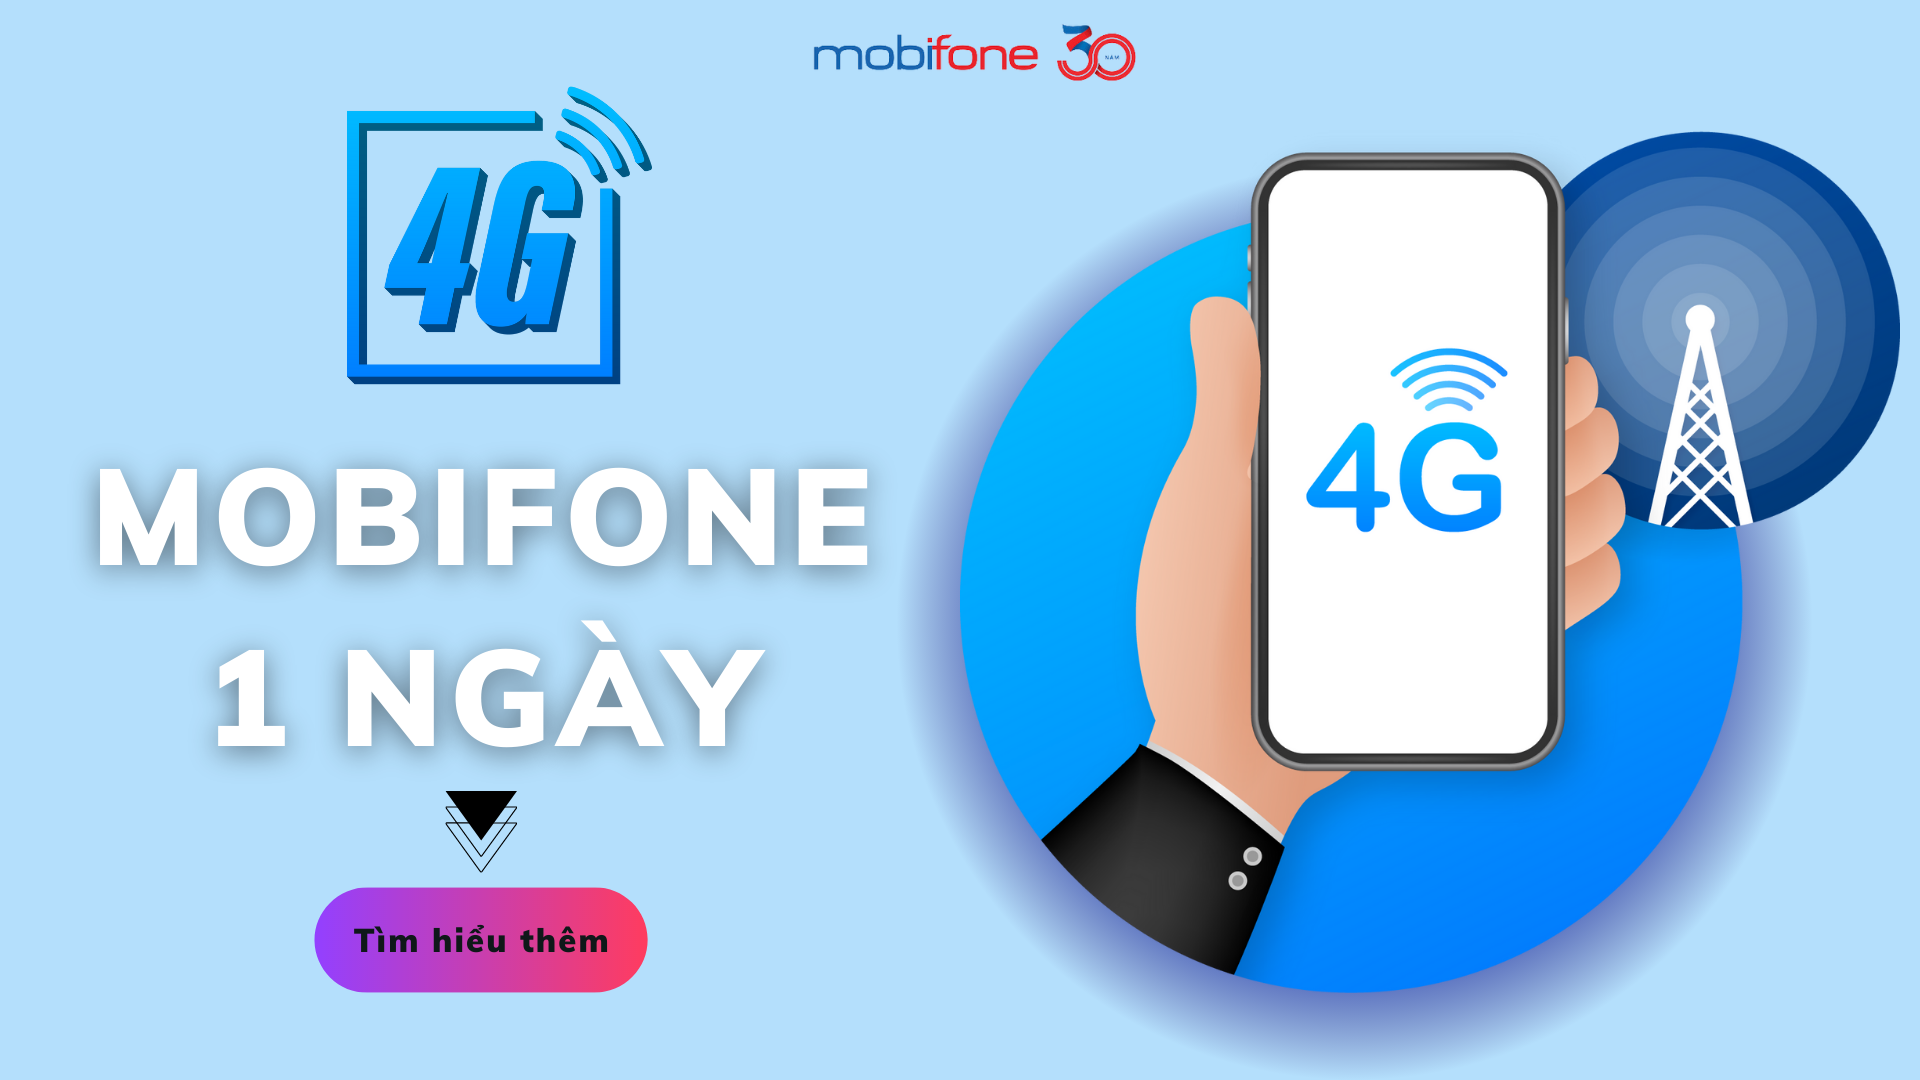 4G Mobifone 1 ngày